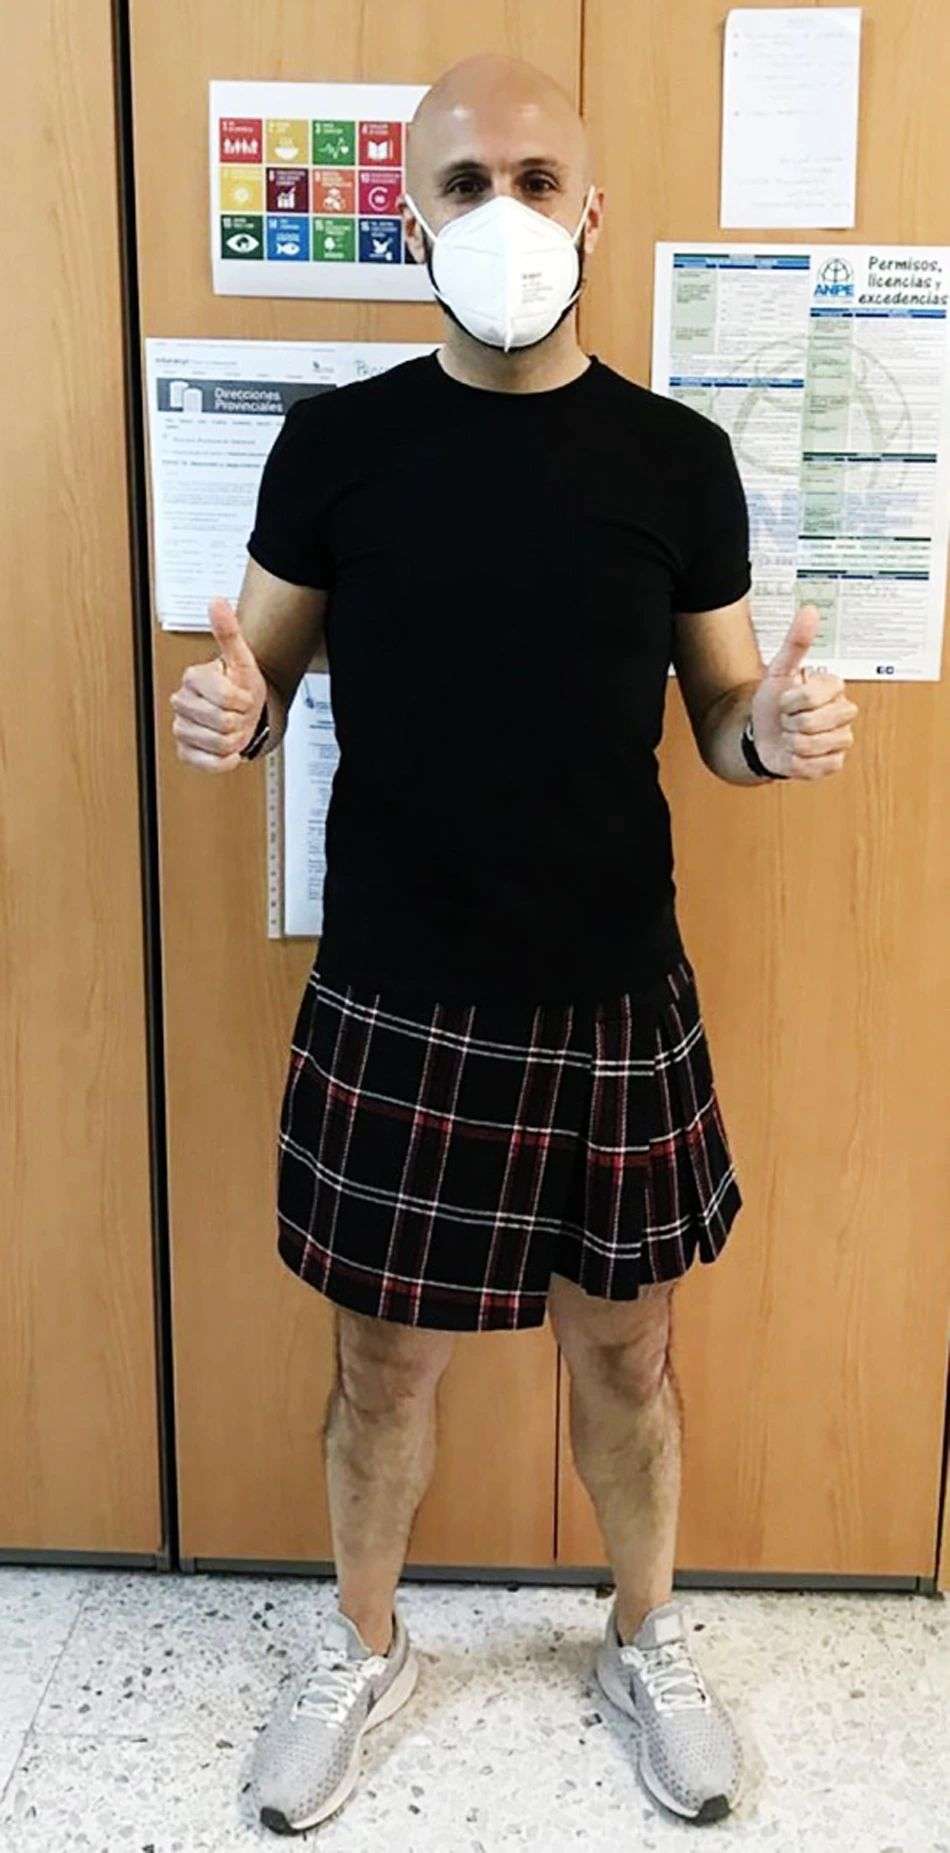 बच्चे के सपोर्ट में पुरुष टीचर्स पहन रहे स्कर्ट